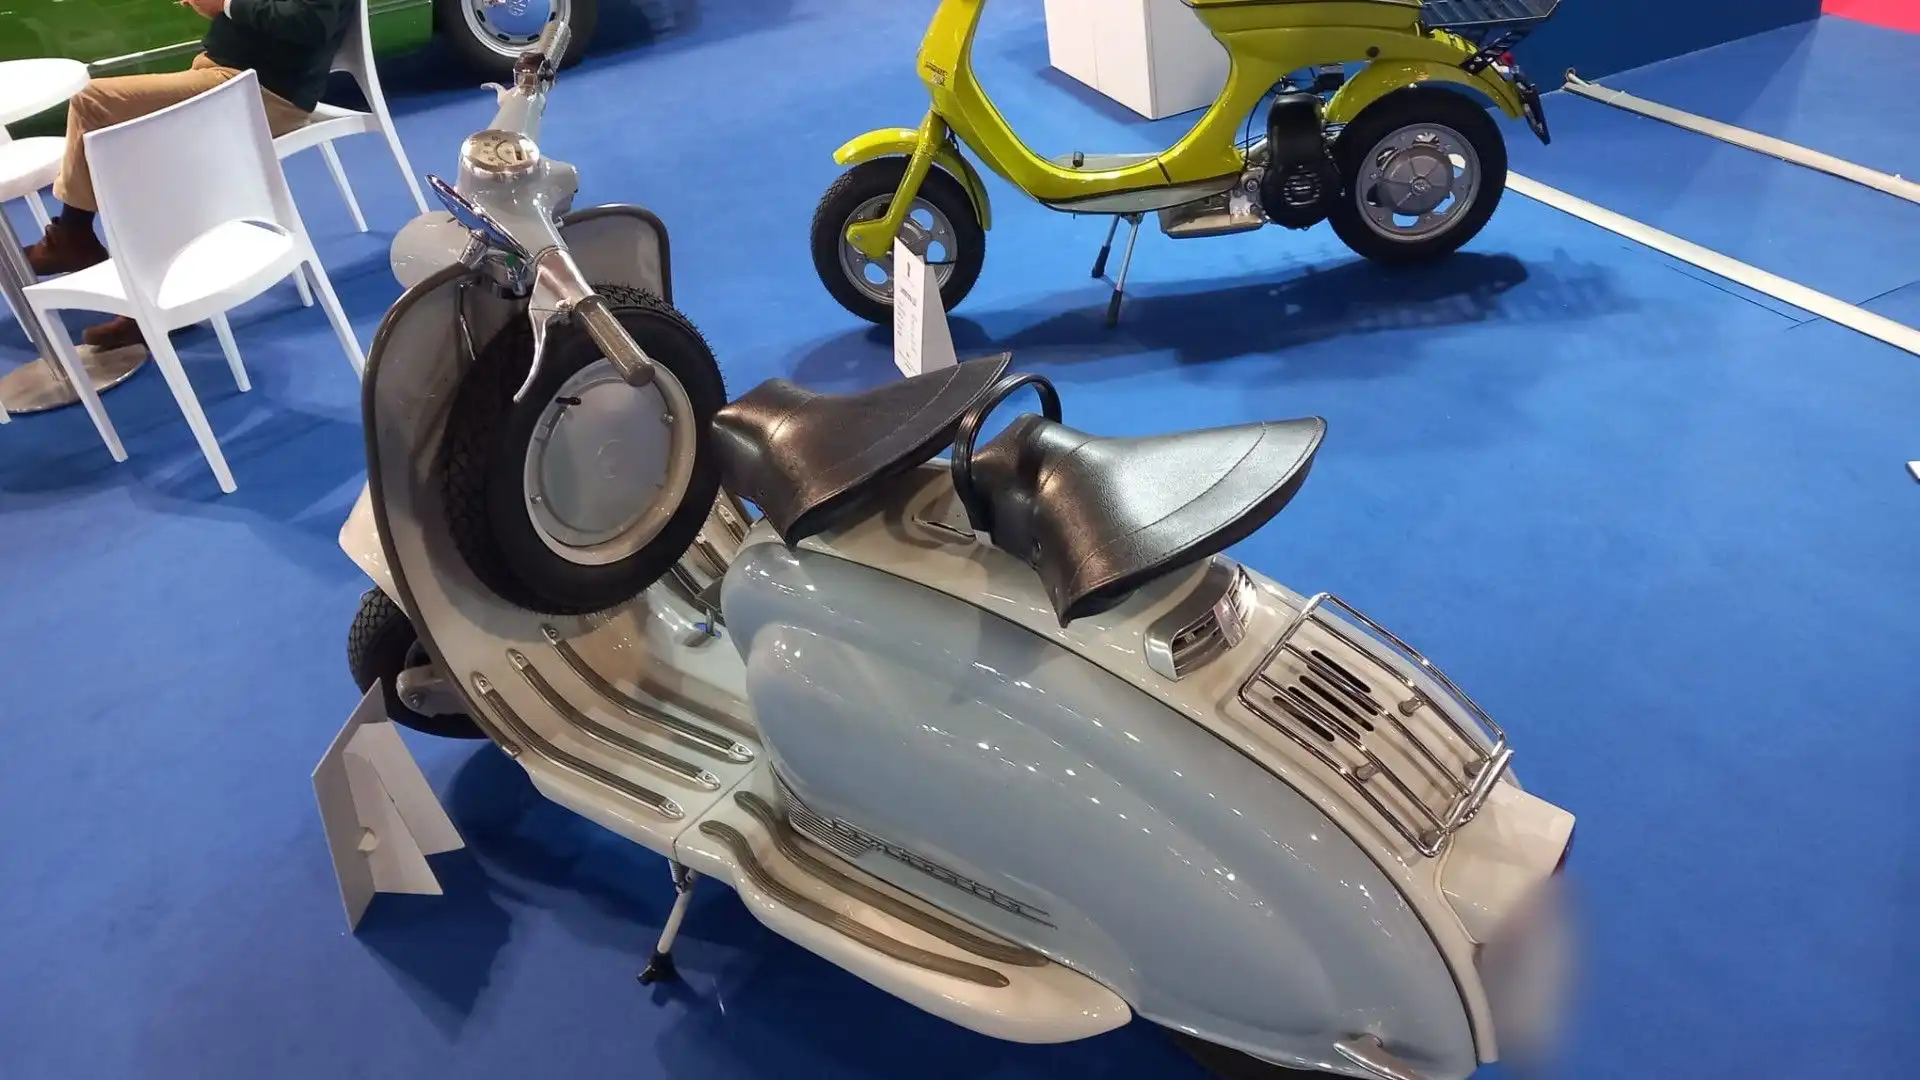 Lo scooter venne chiamato Lambretta dall'artista Daniele Oppi